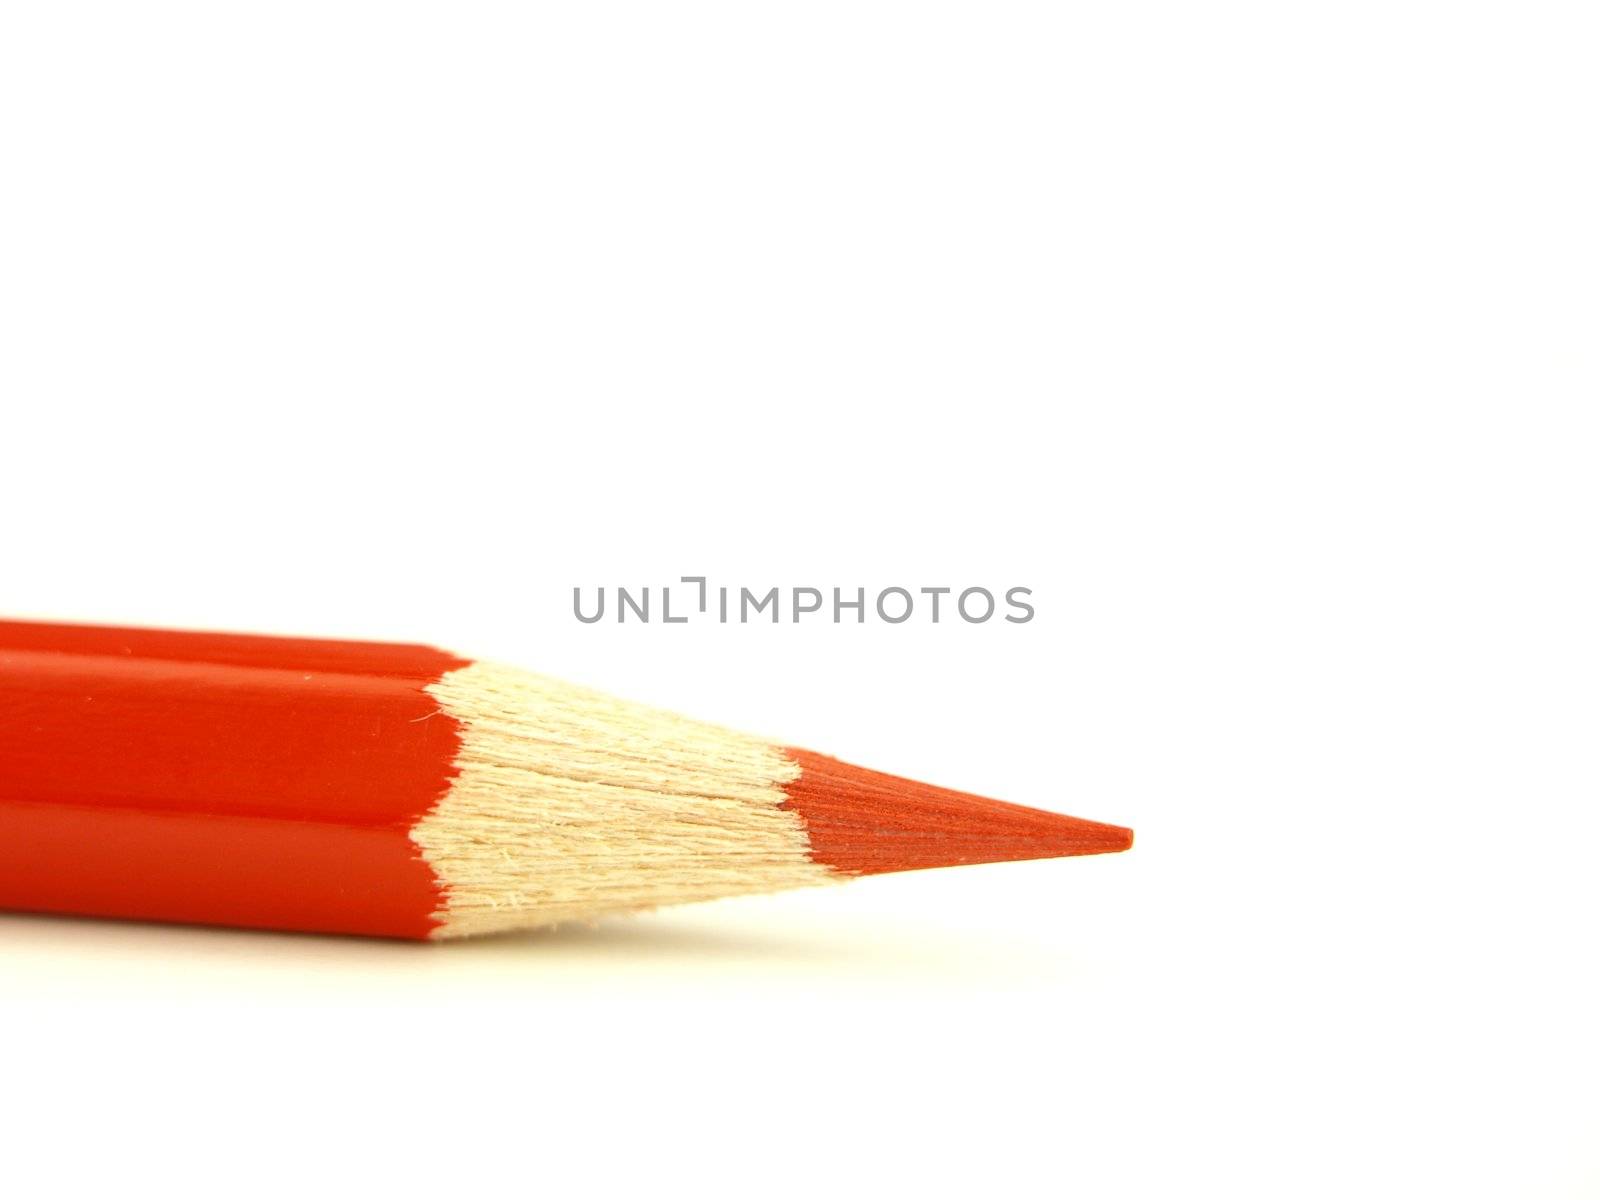 crayon and pencil